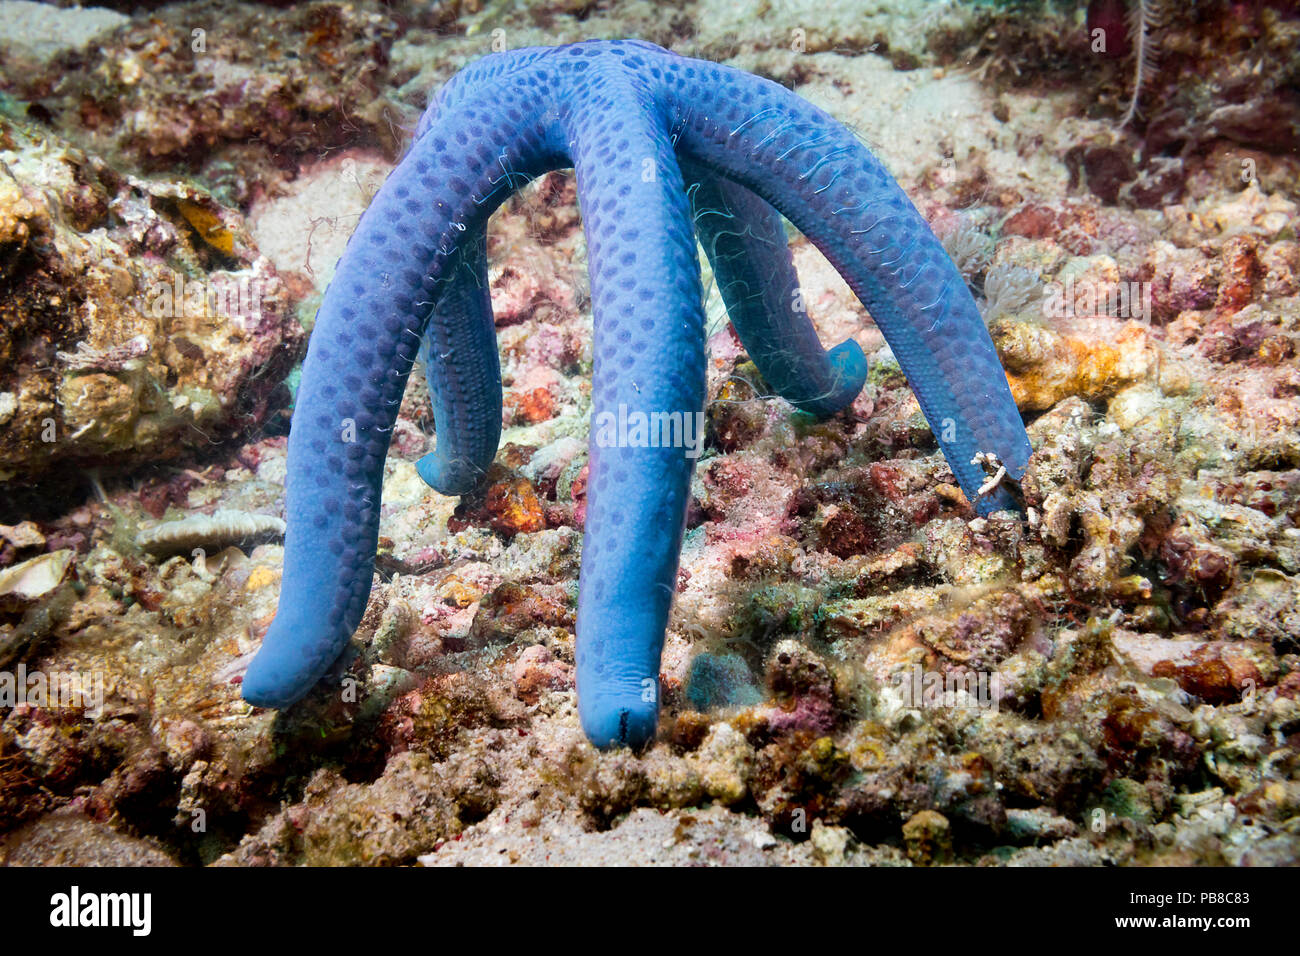 Questo seastar/starfish, Linckia laevigata, si appollaia alto come si può per rilasciare i flussi di uscita dello sperma nella corrente nella speranza di produrre futuro Foto Stock